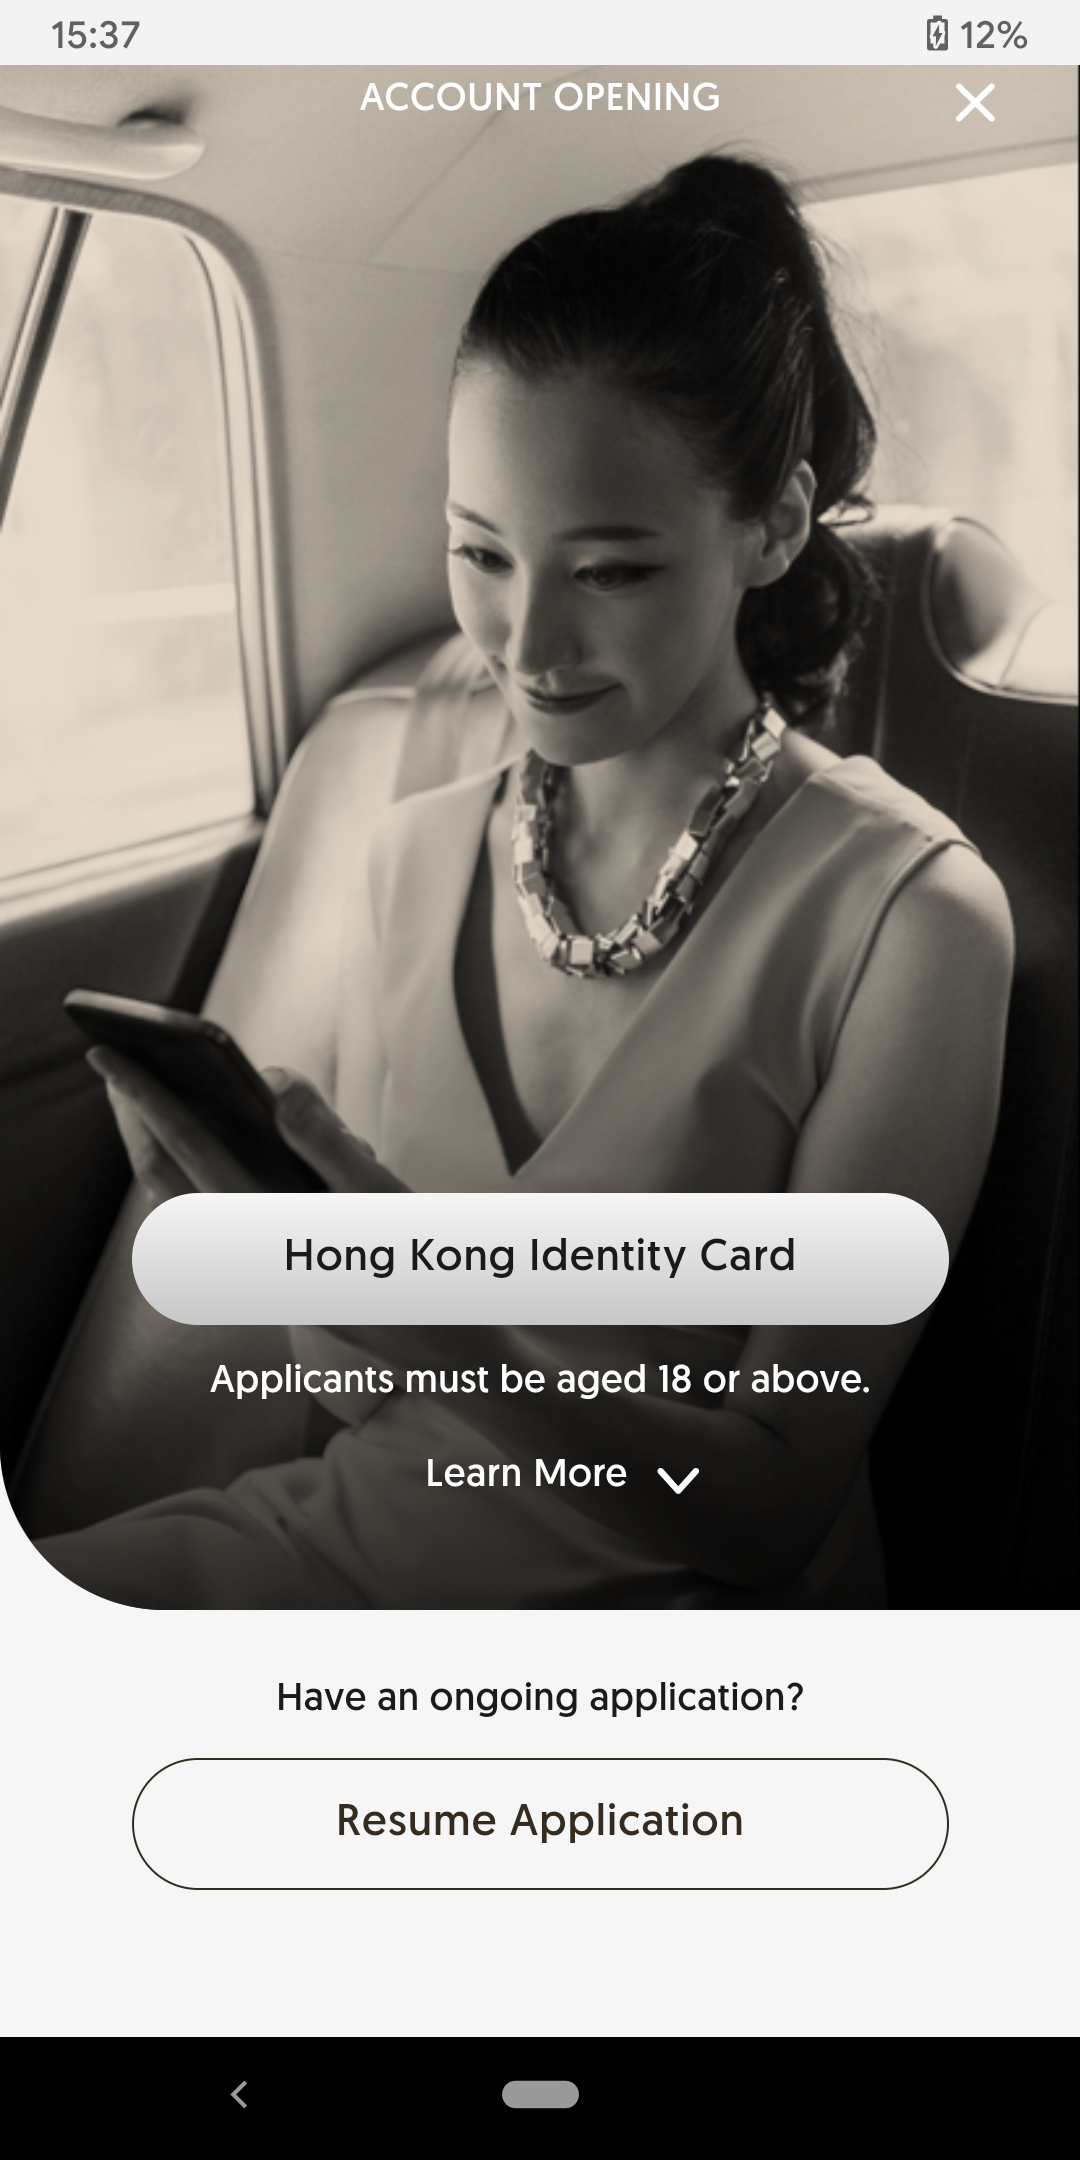 Select “Hong Kong Identity Card”